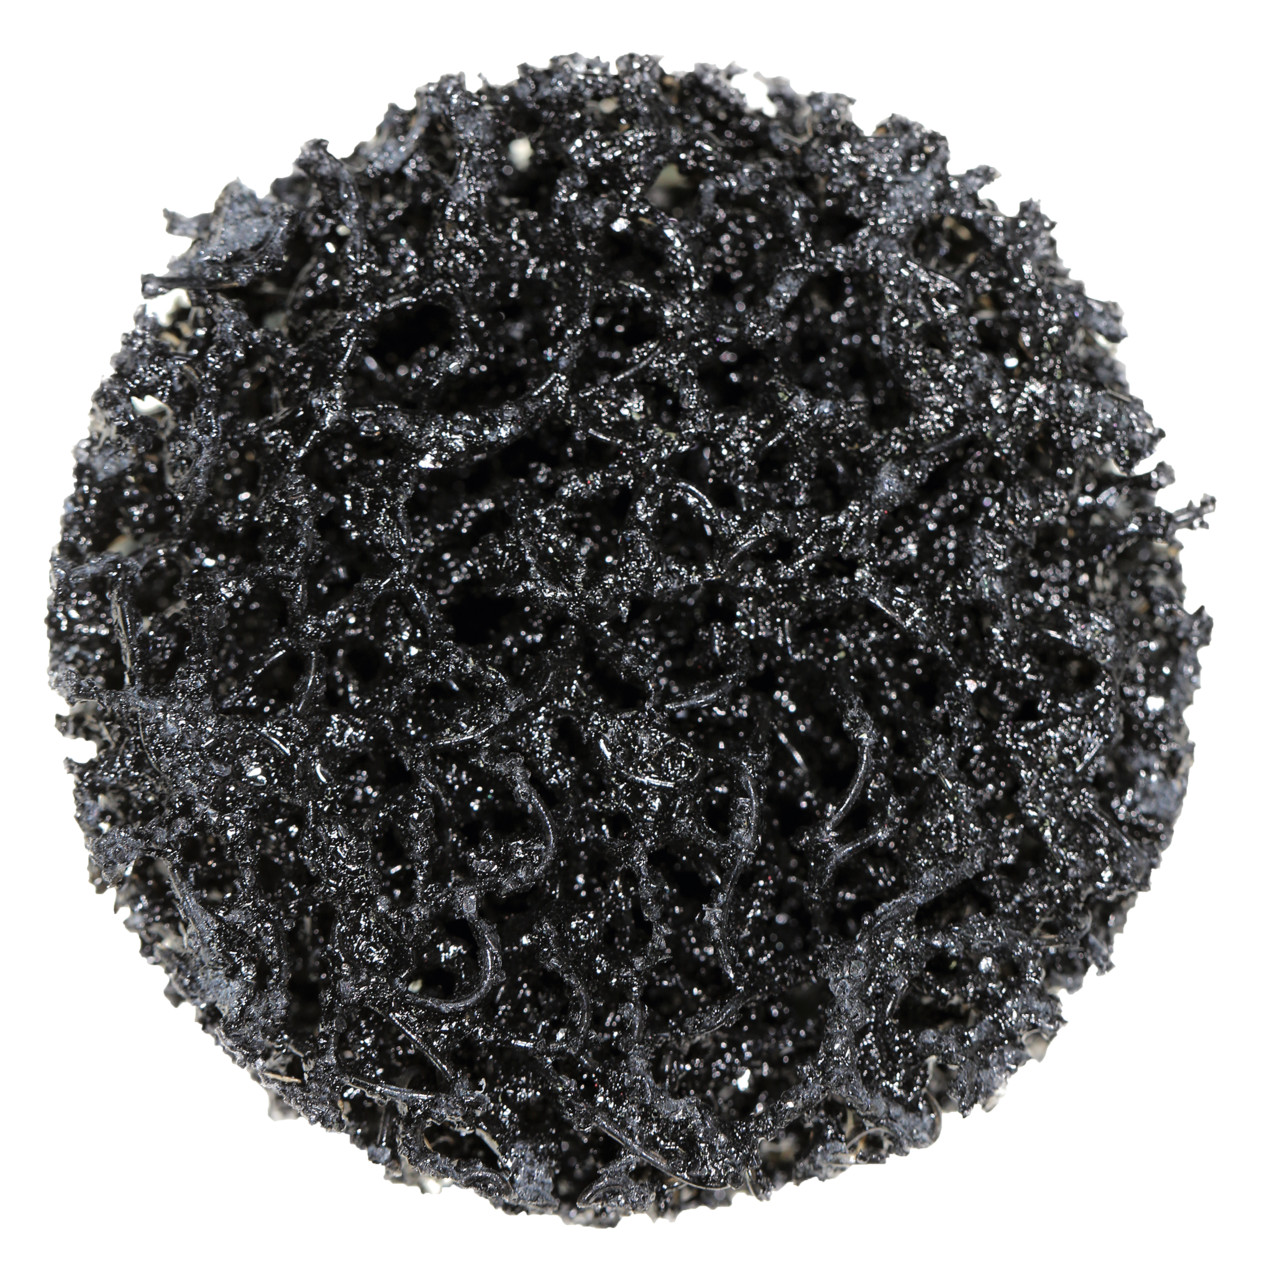 Tyrolit Disque de nettoyage grossier Dimension 50xR Pour l'acier, l'acier inoxydable et le PVC, C GROB, forme : QDISC, art. 112602